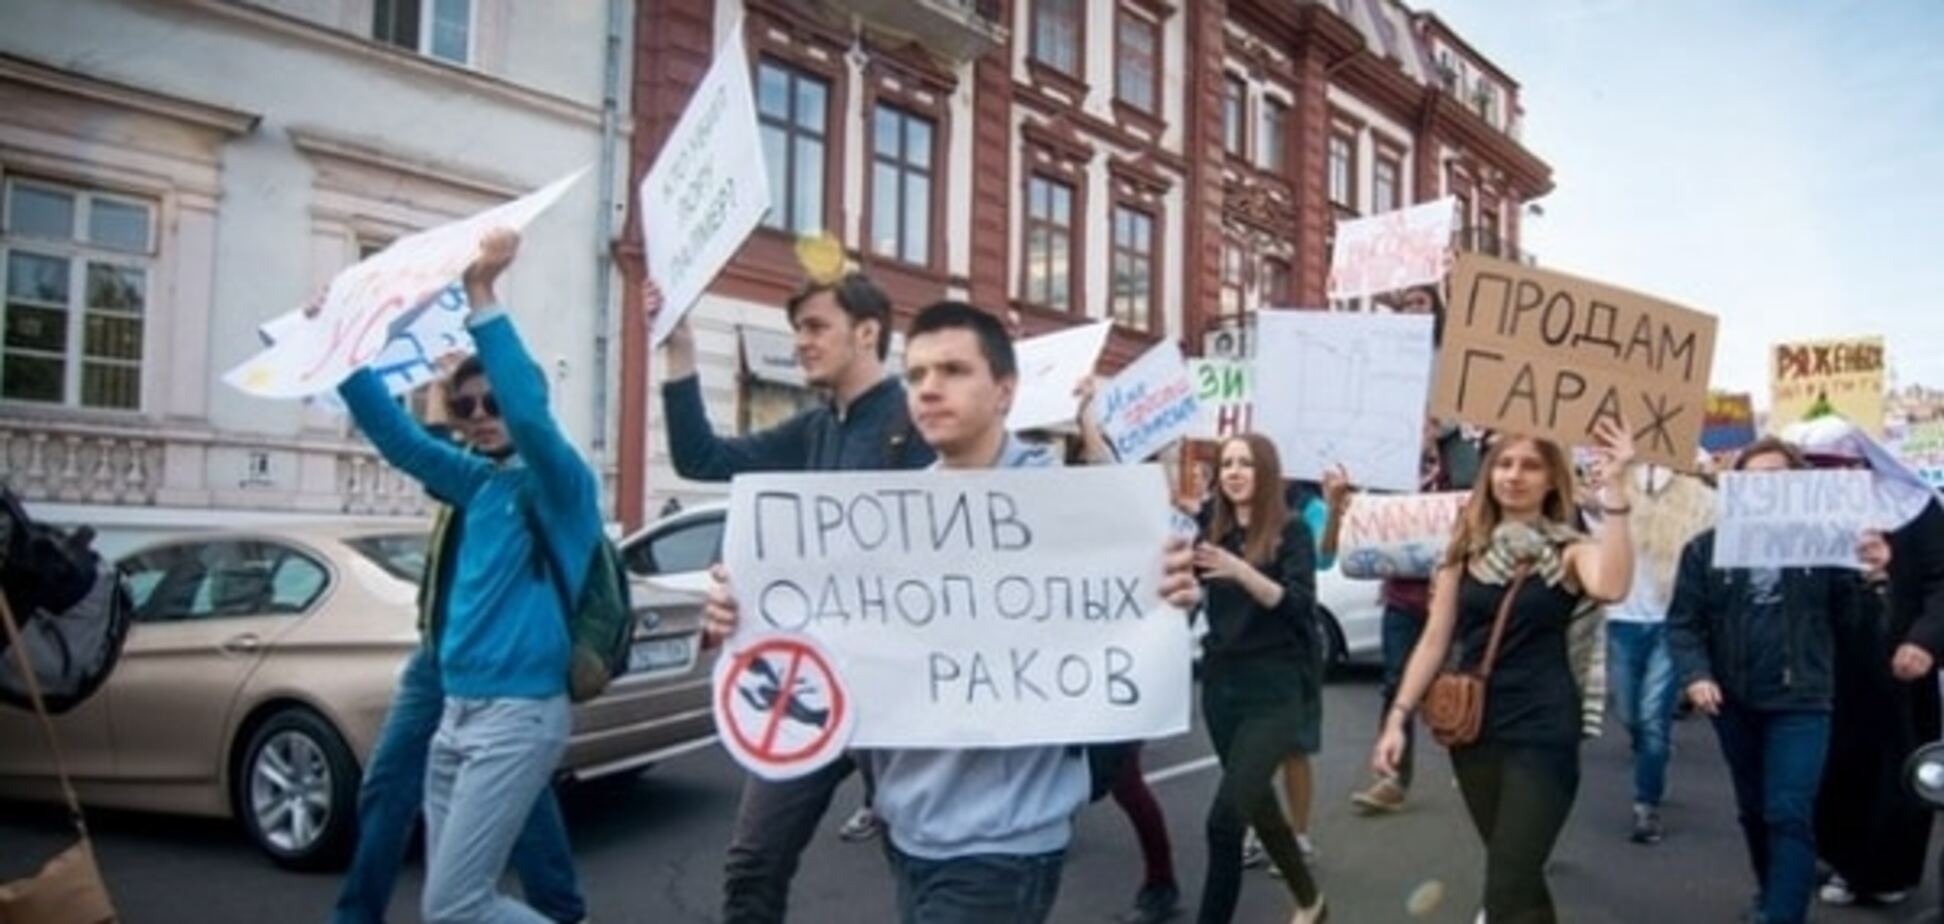 Проти одностатевих раків: в Одесі влаштували абсурдну 'монстрацію'. Фоторепортаж